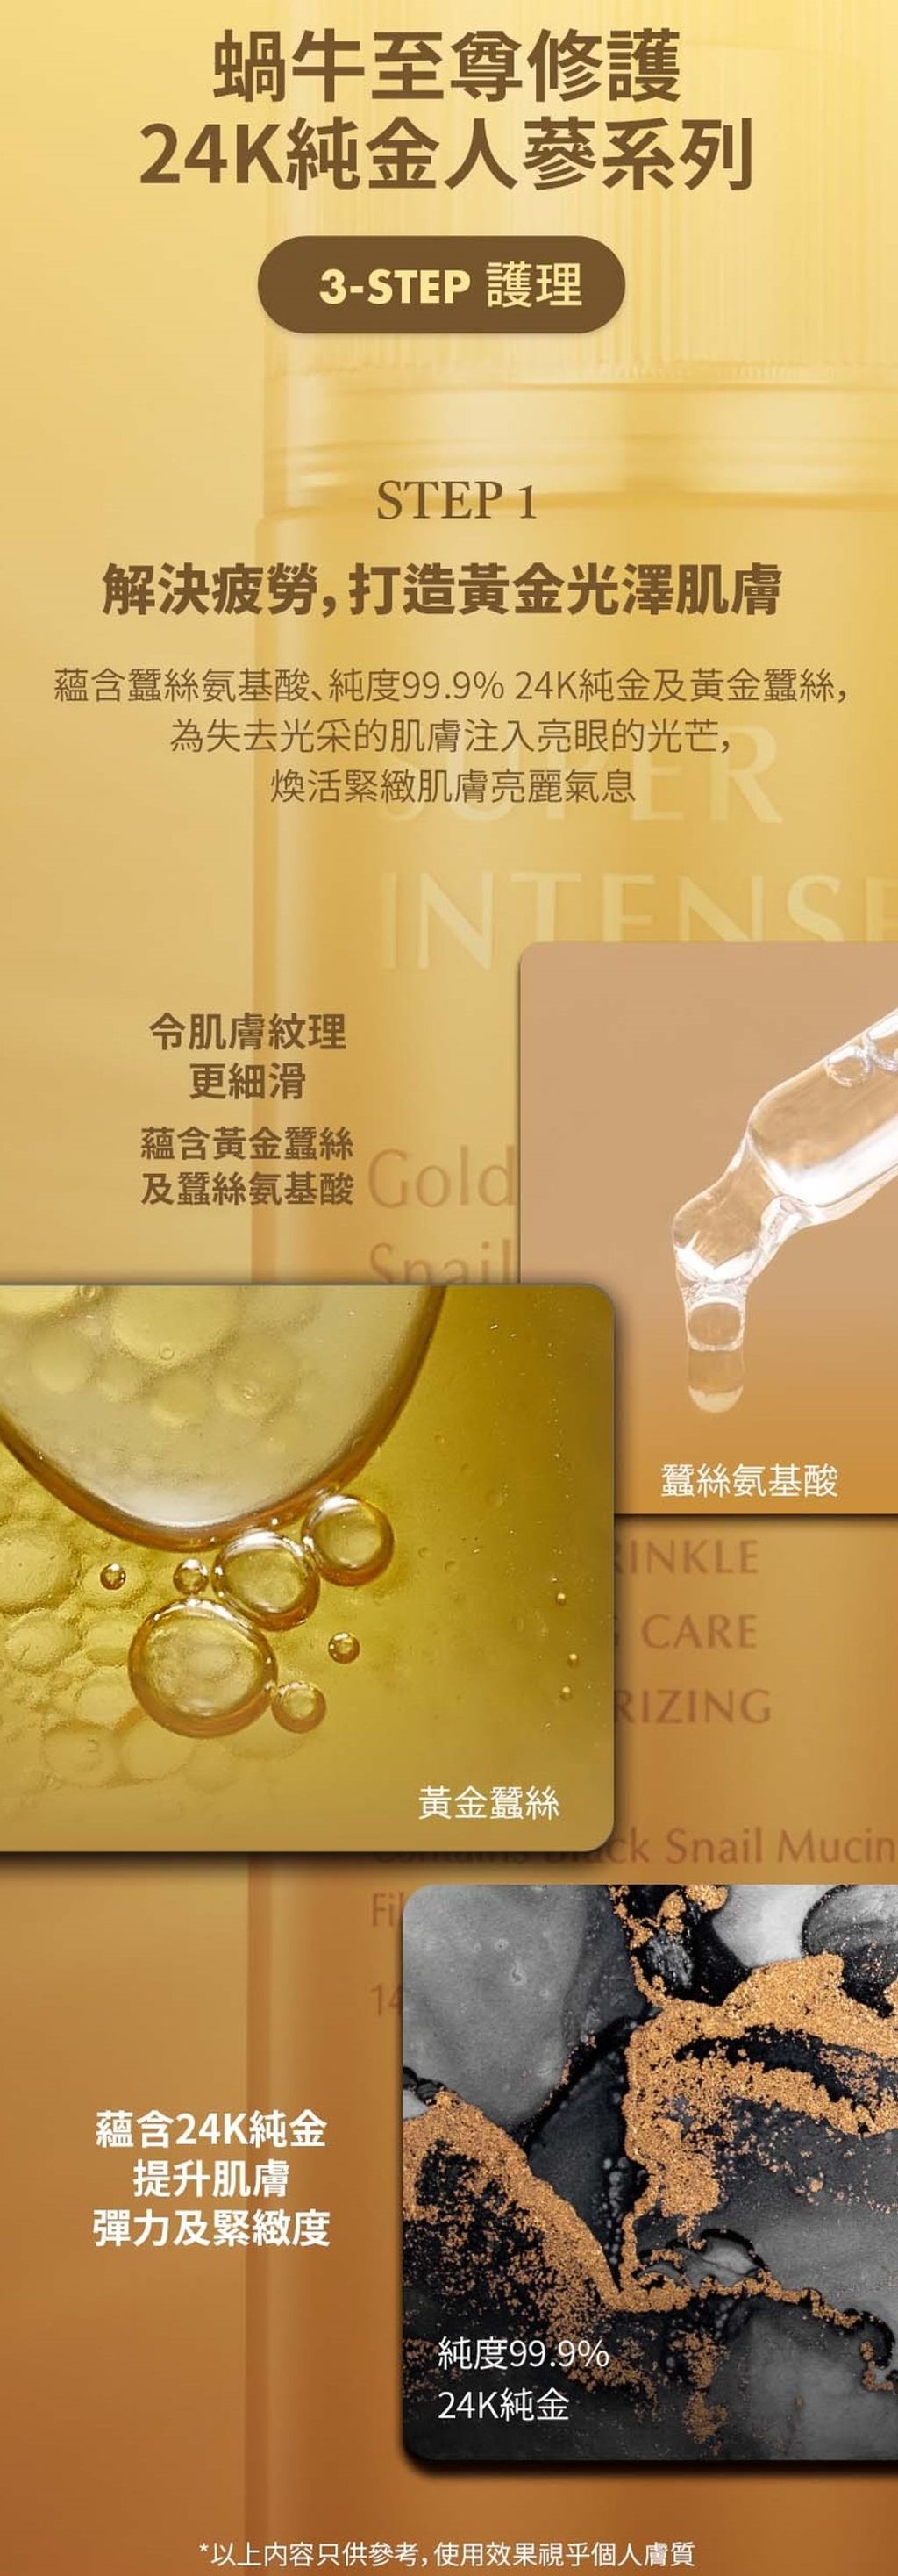 SUPER INTENSE Gold 24K Ginseng Snail Emulsion_HK7.jpg